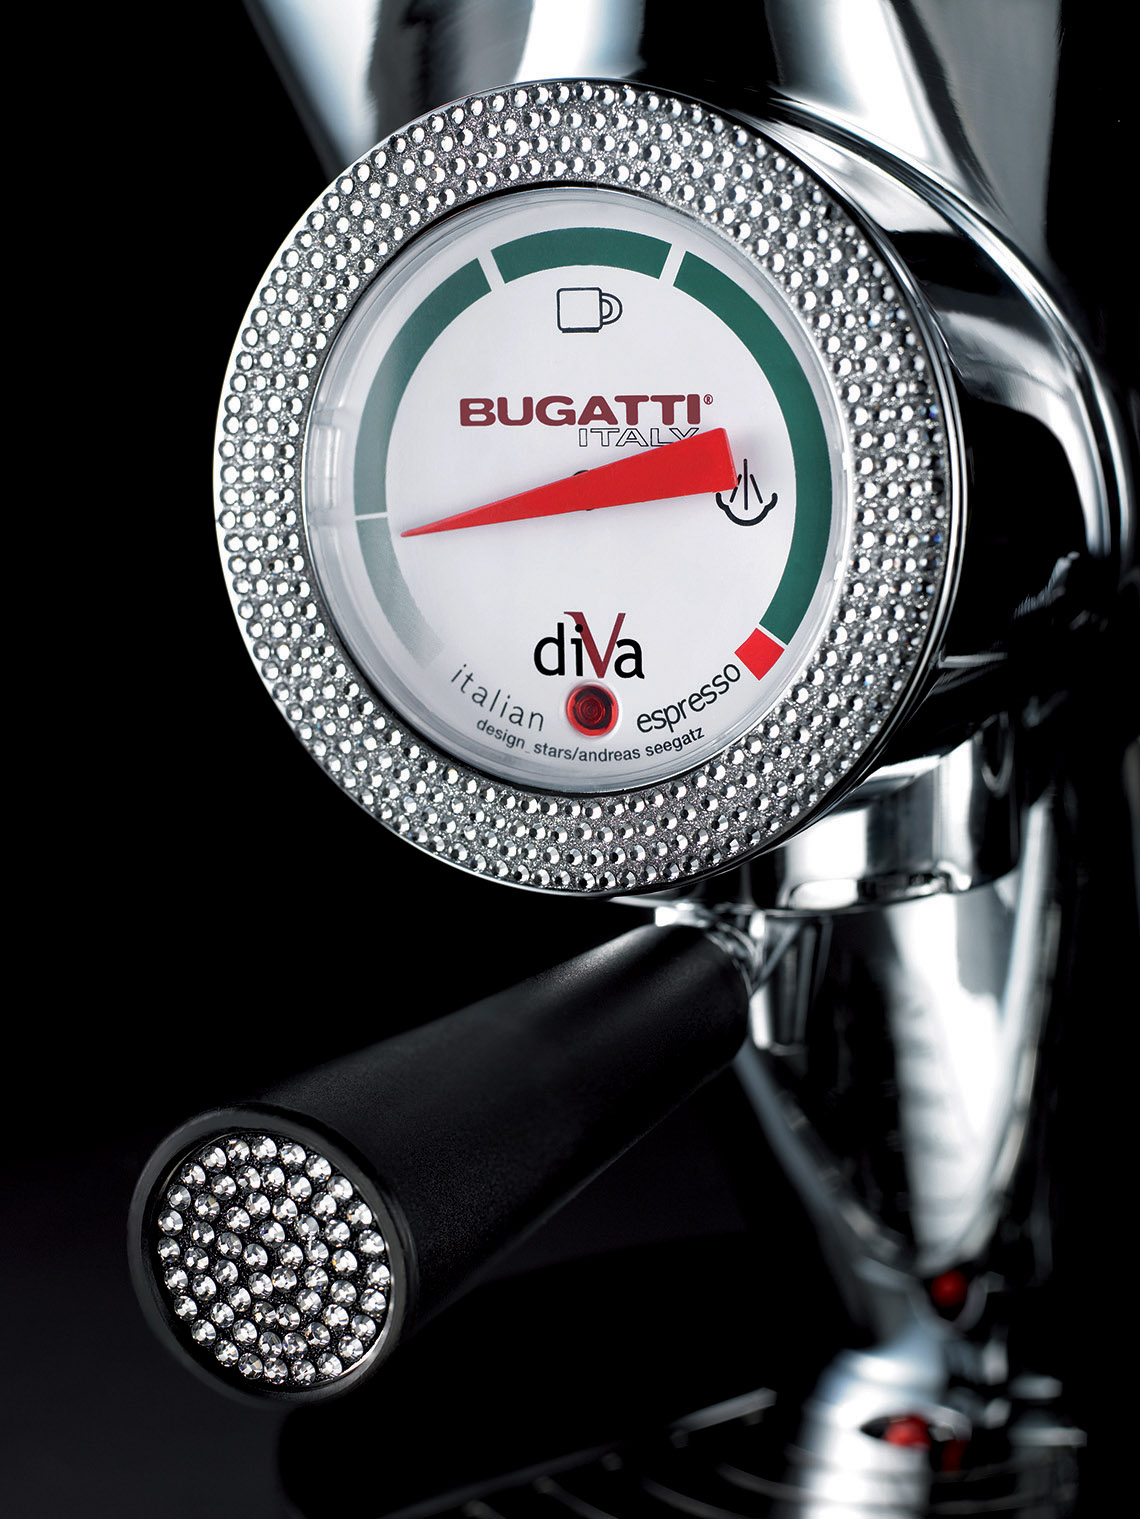 Sprzęt słynnej włoskiej marki Bugatti będzie nieodmiennie kultowym prezentem ślubnym